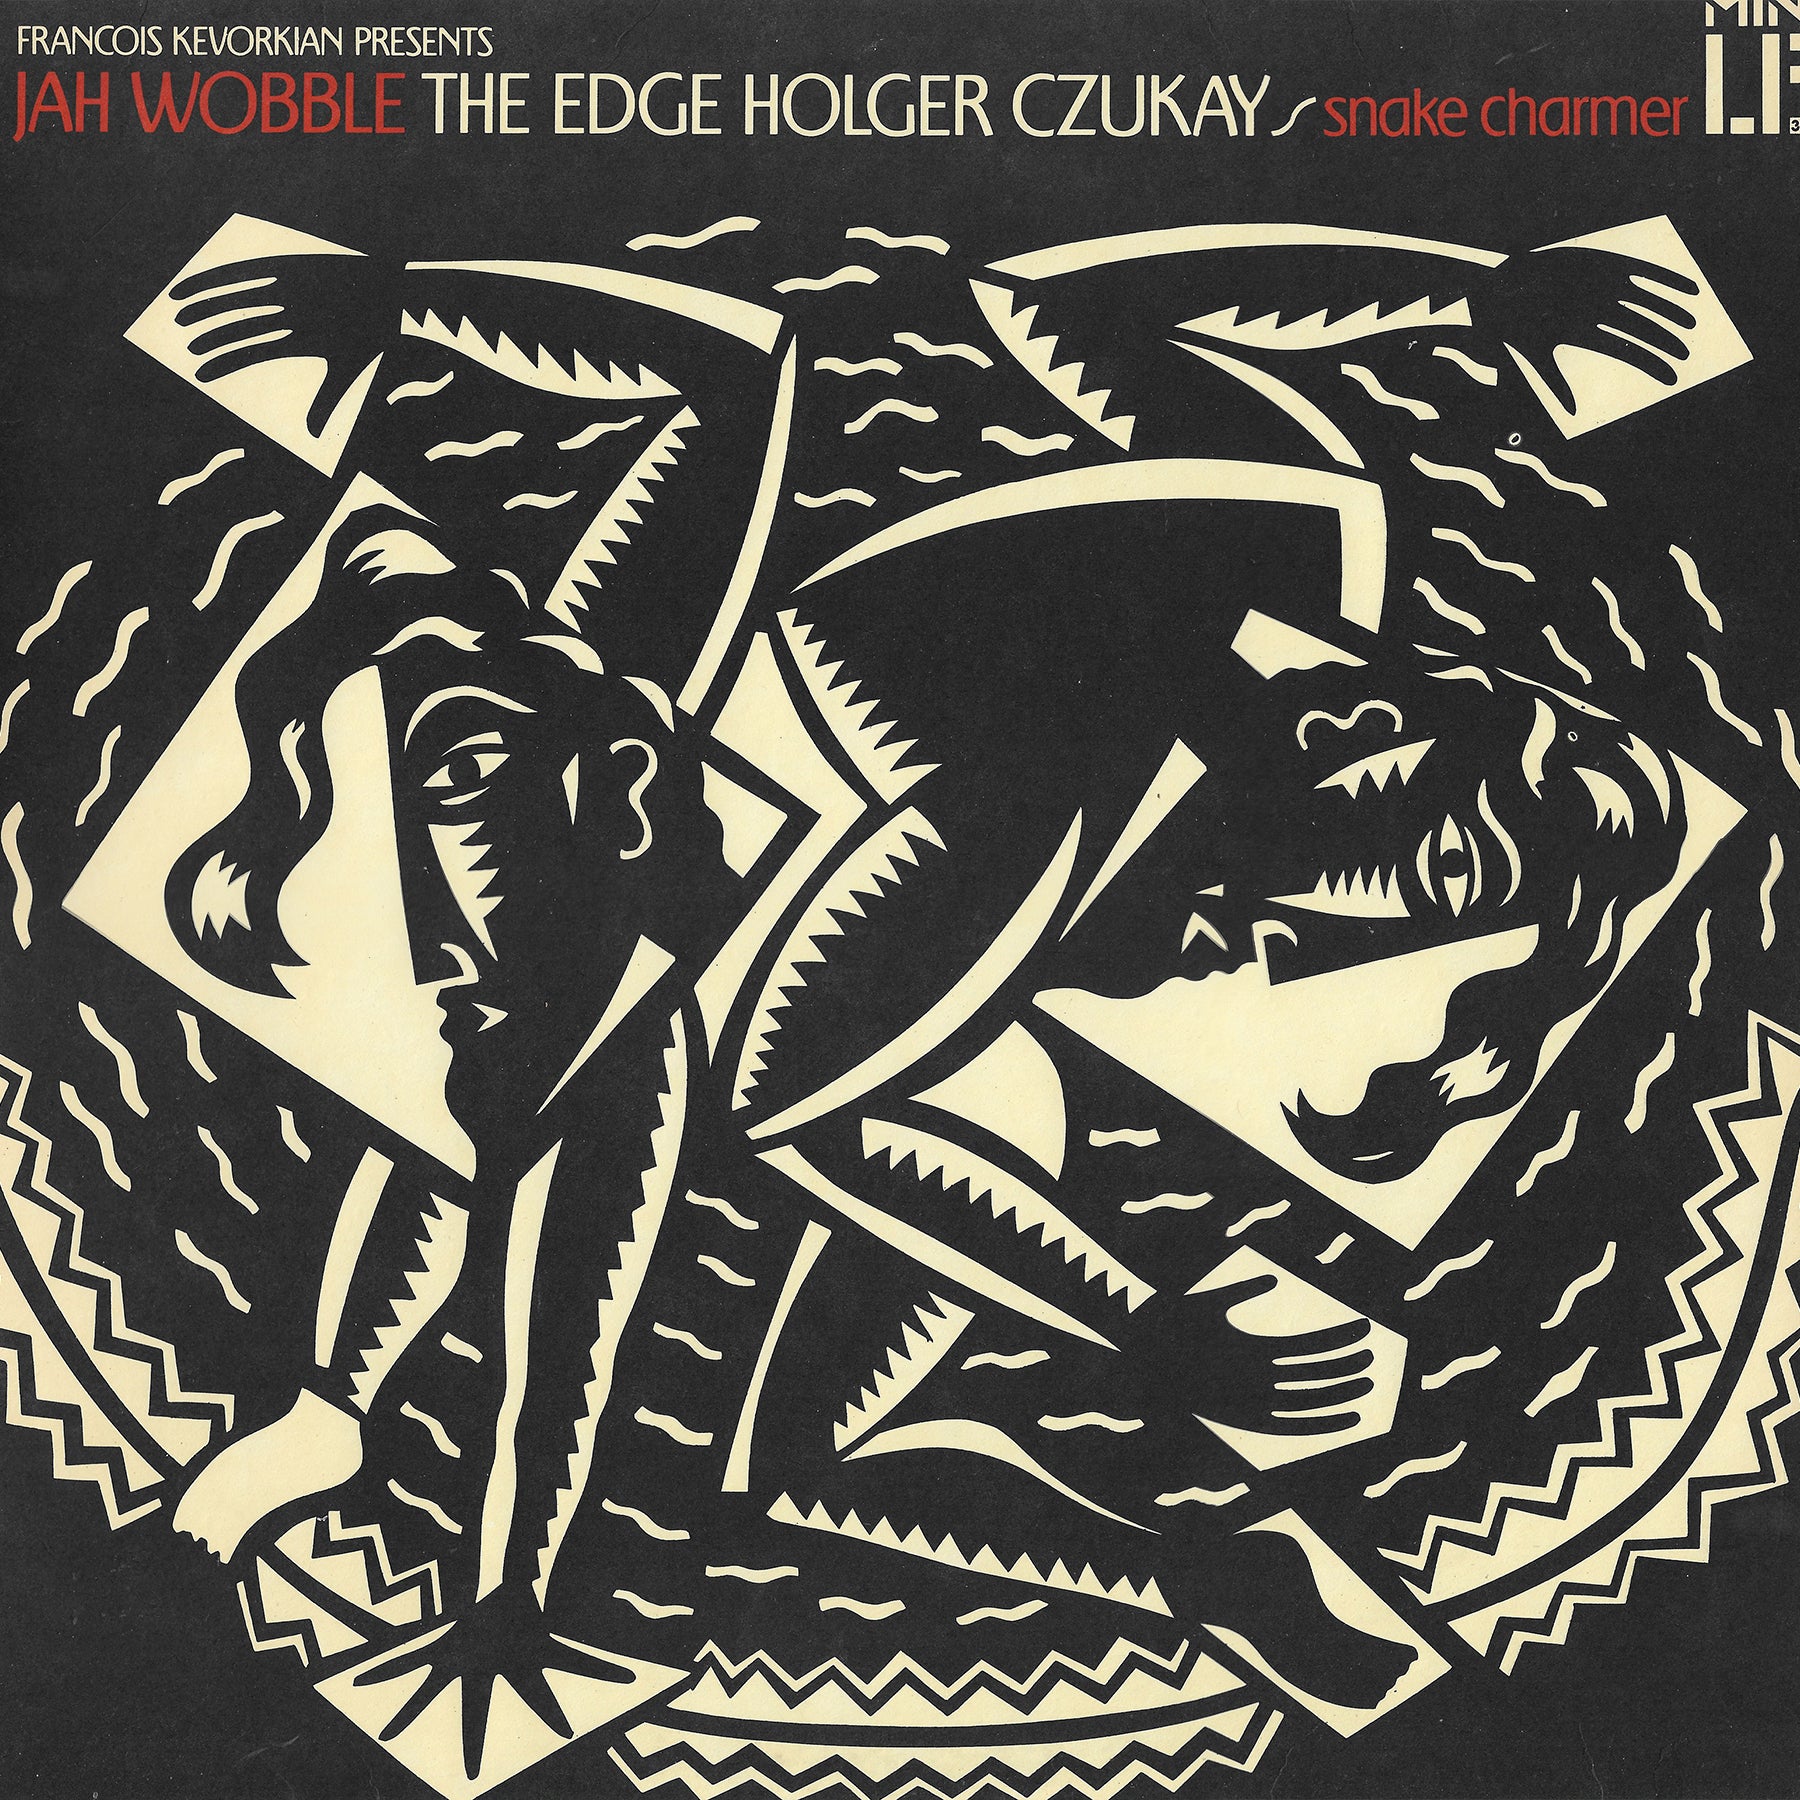 Jah Wobble, The Edge, Holger Czukay - Snake Charmer